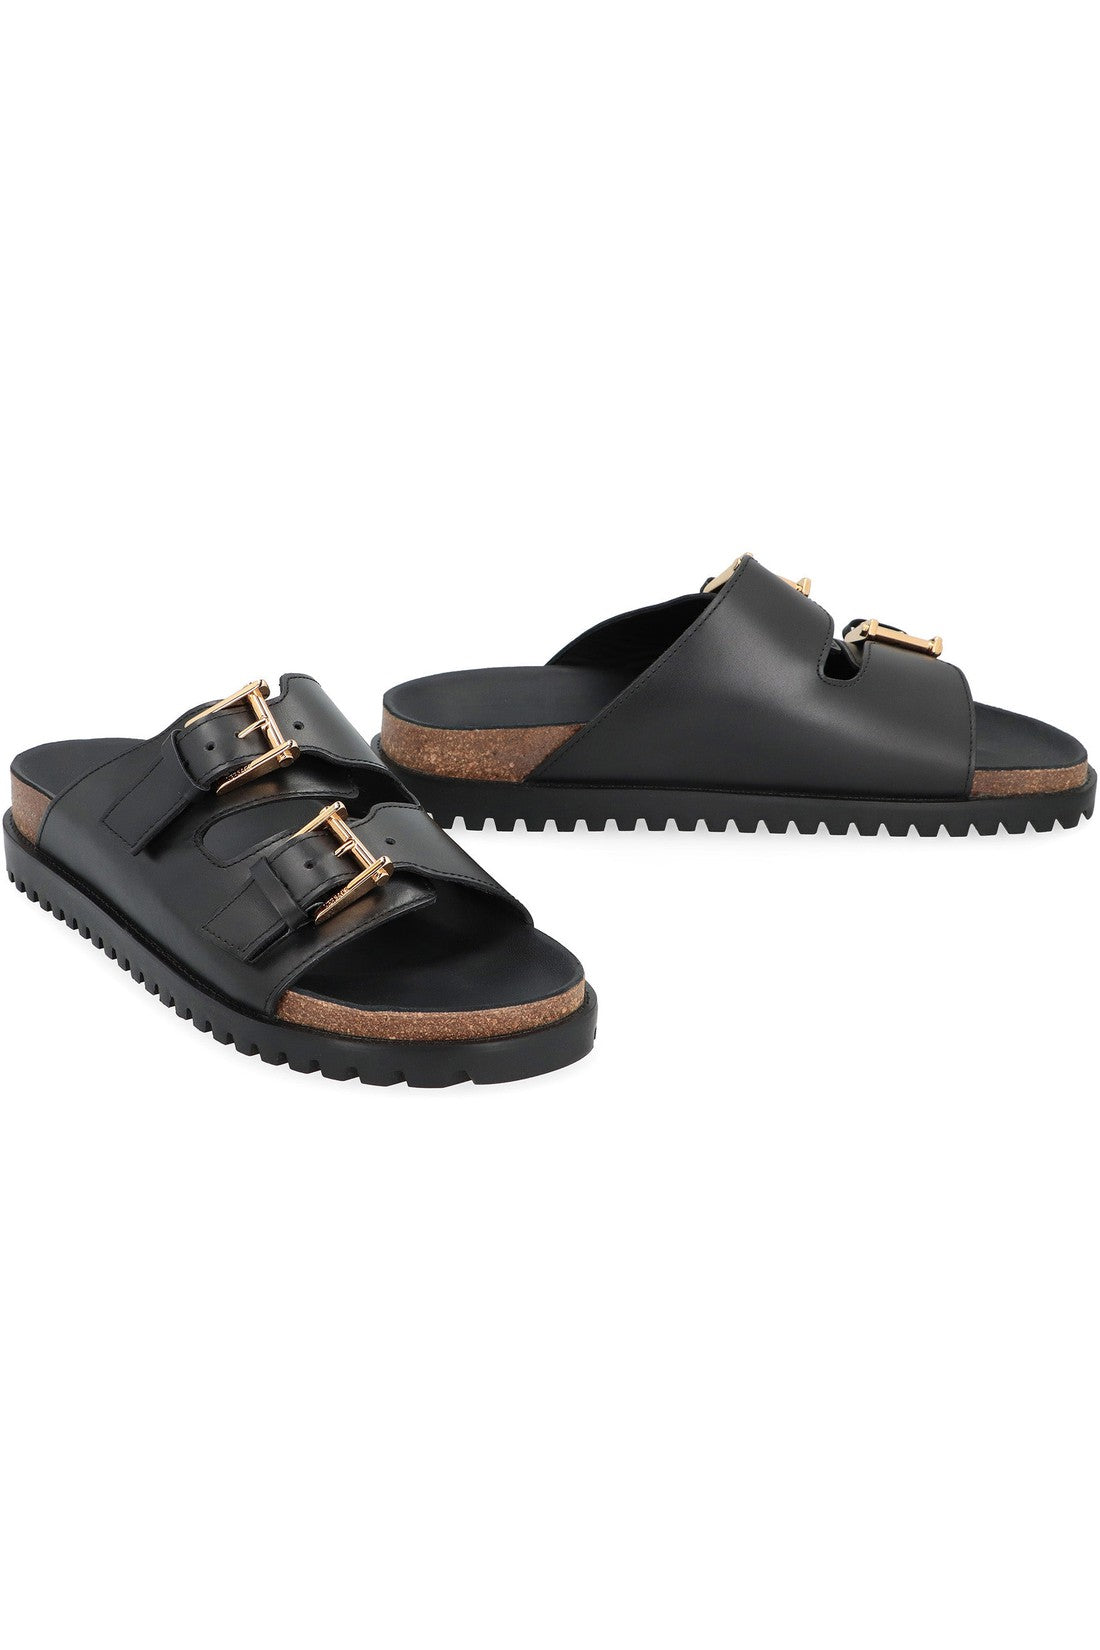 Versace-OUTLET-SALE-Leather sandals-ARCHIVIST